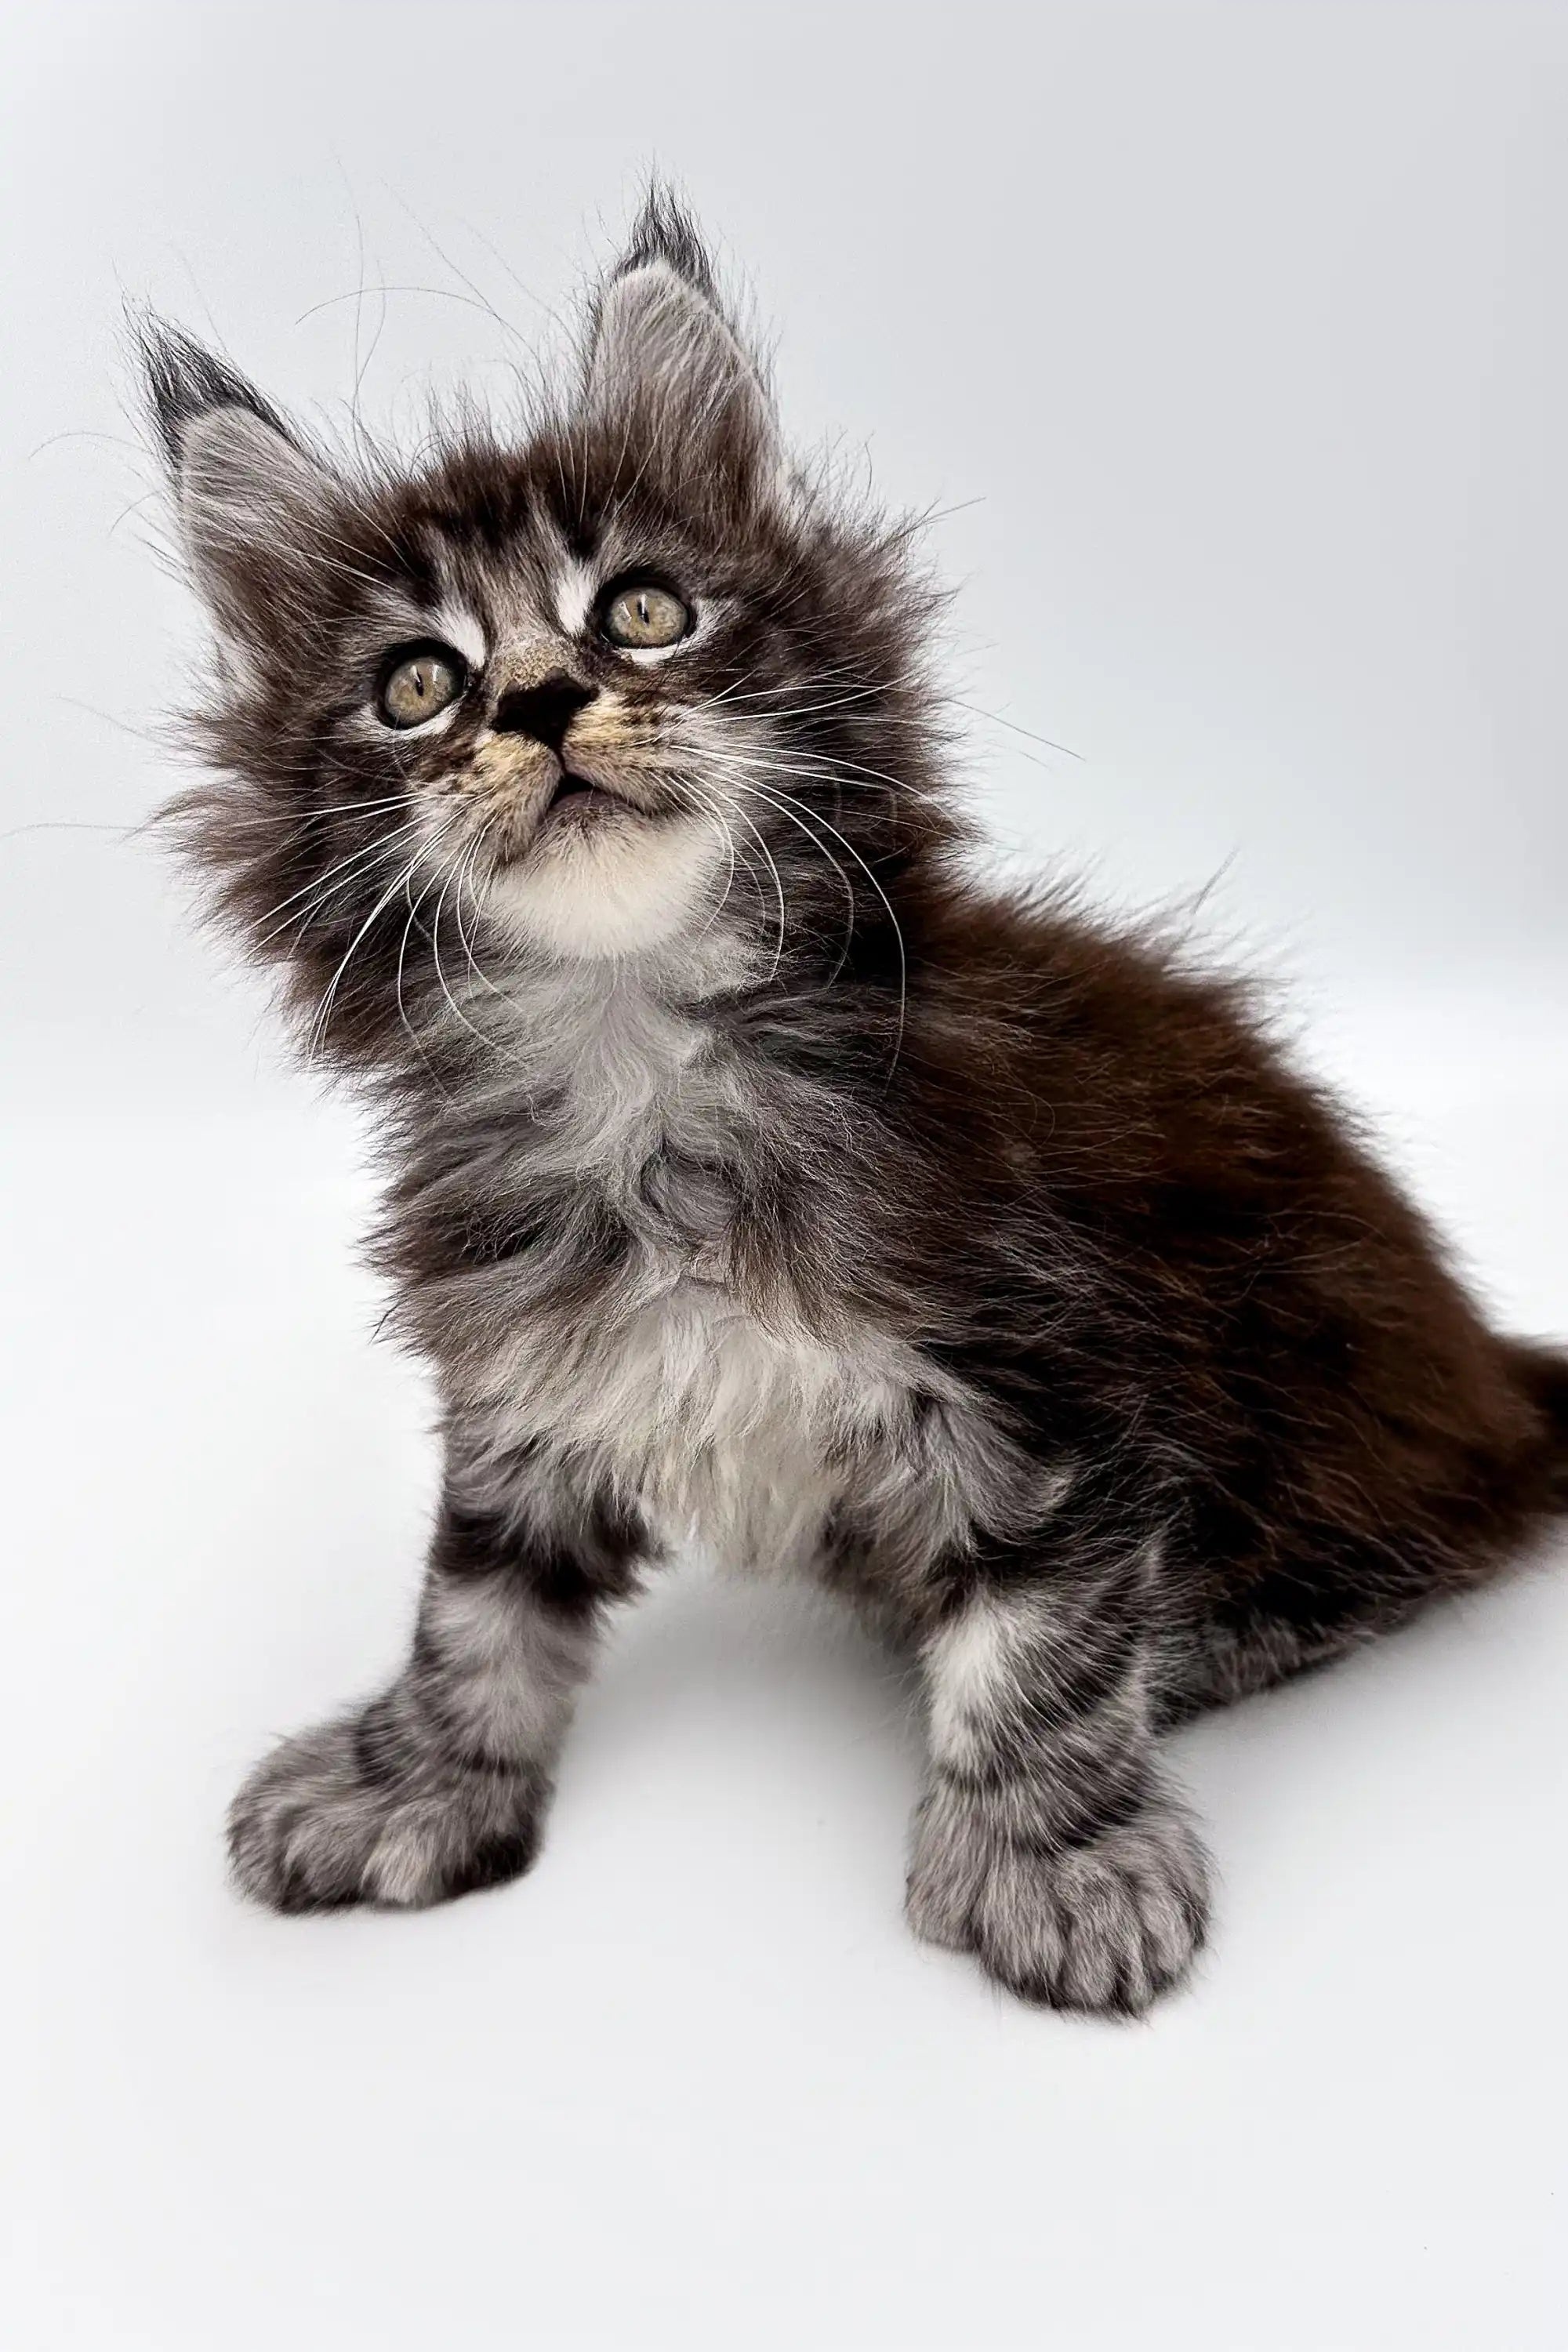 Maine Coon Kittens for Sale Steve | Polydactyl Kitten